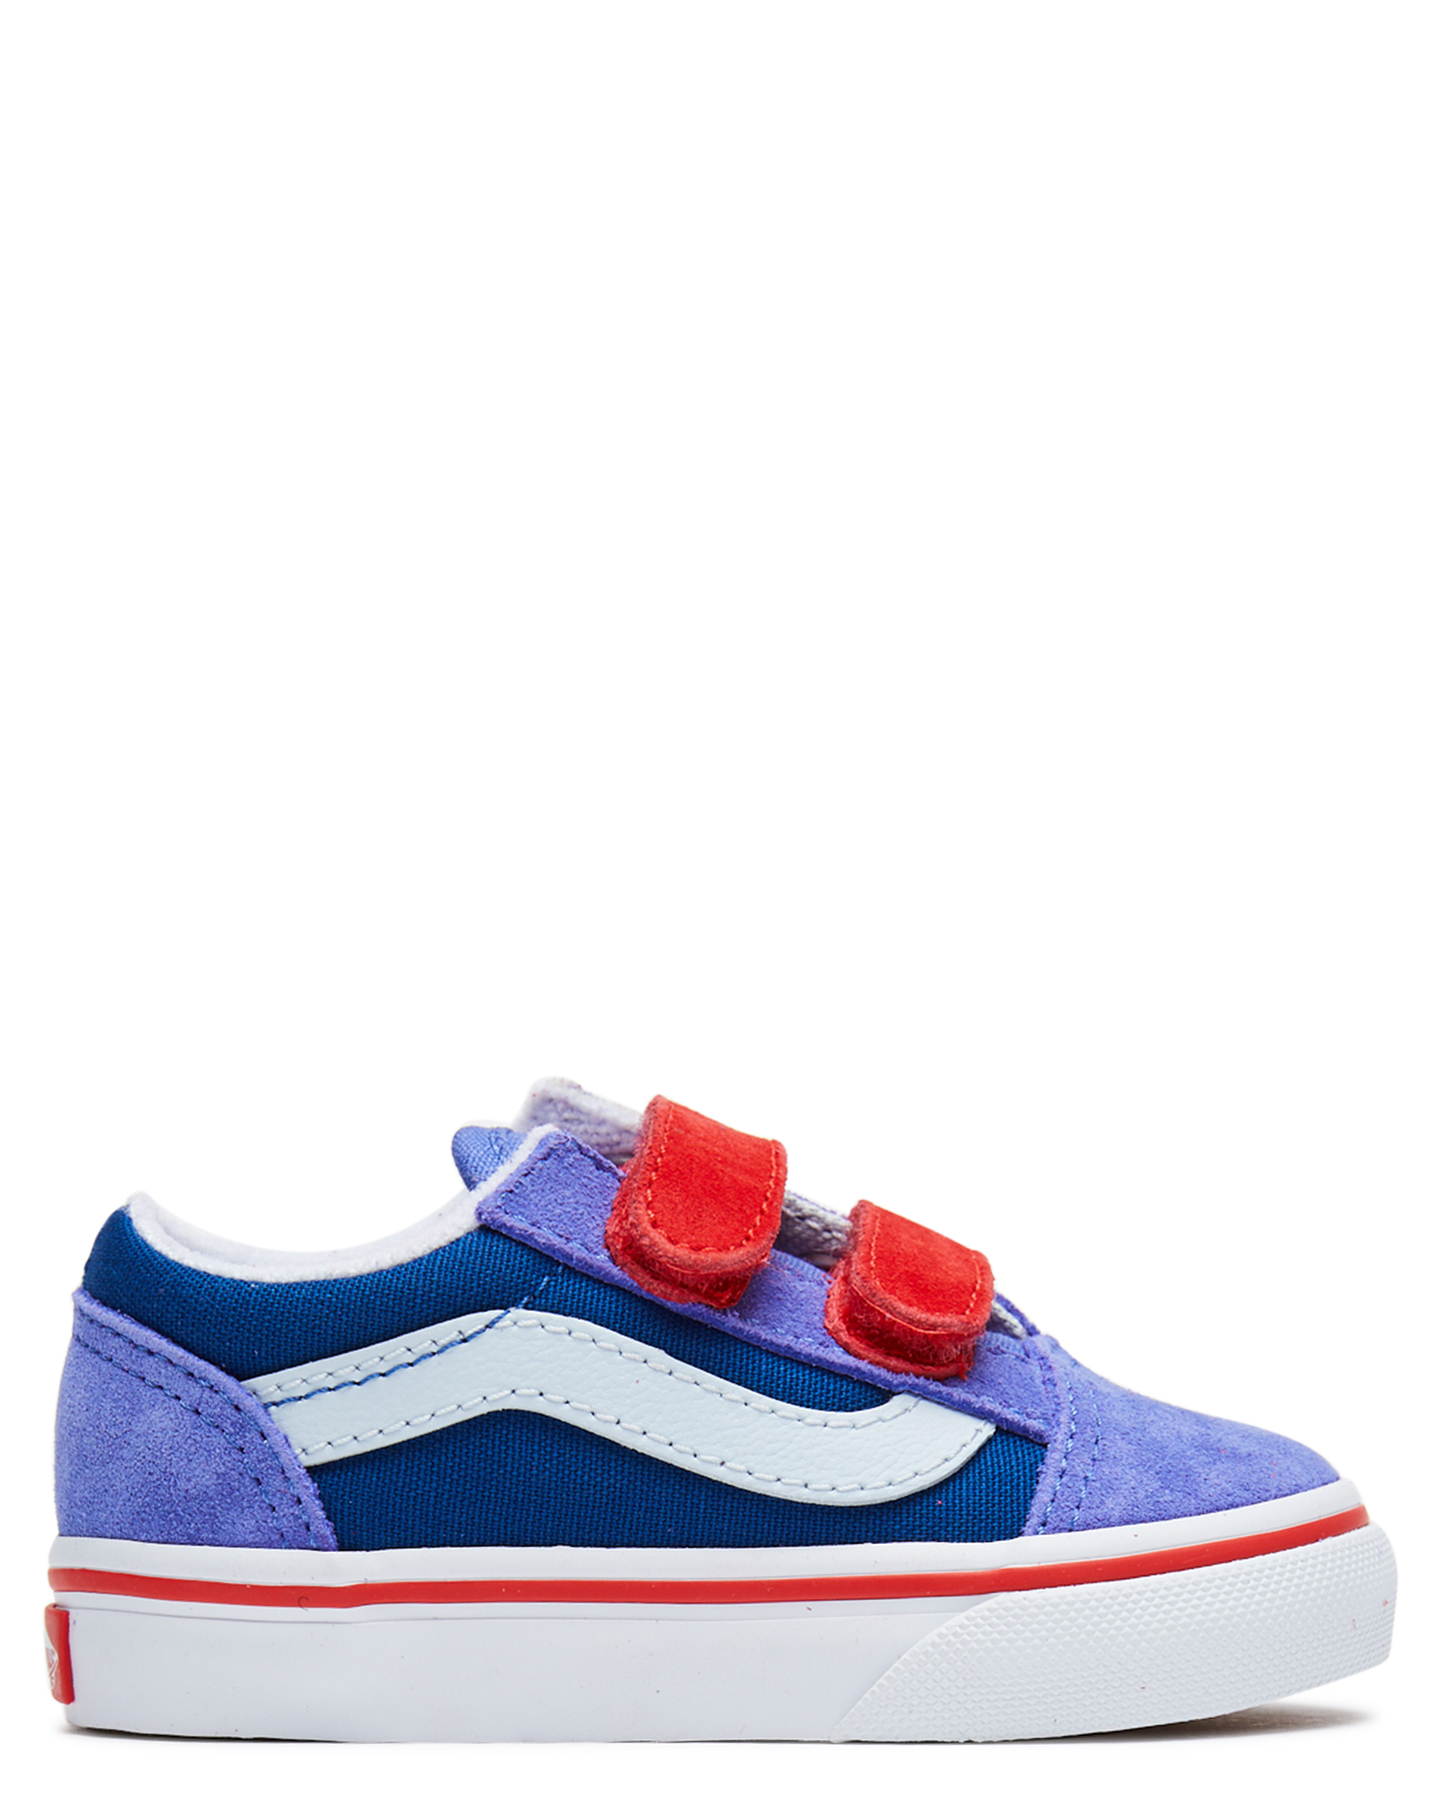 Vans Old Skool Velcro Shoe - Toddler - Baja Blue | SurfStitch